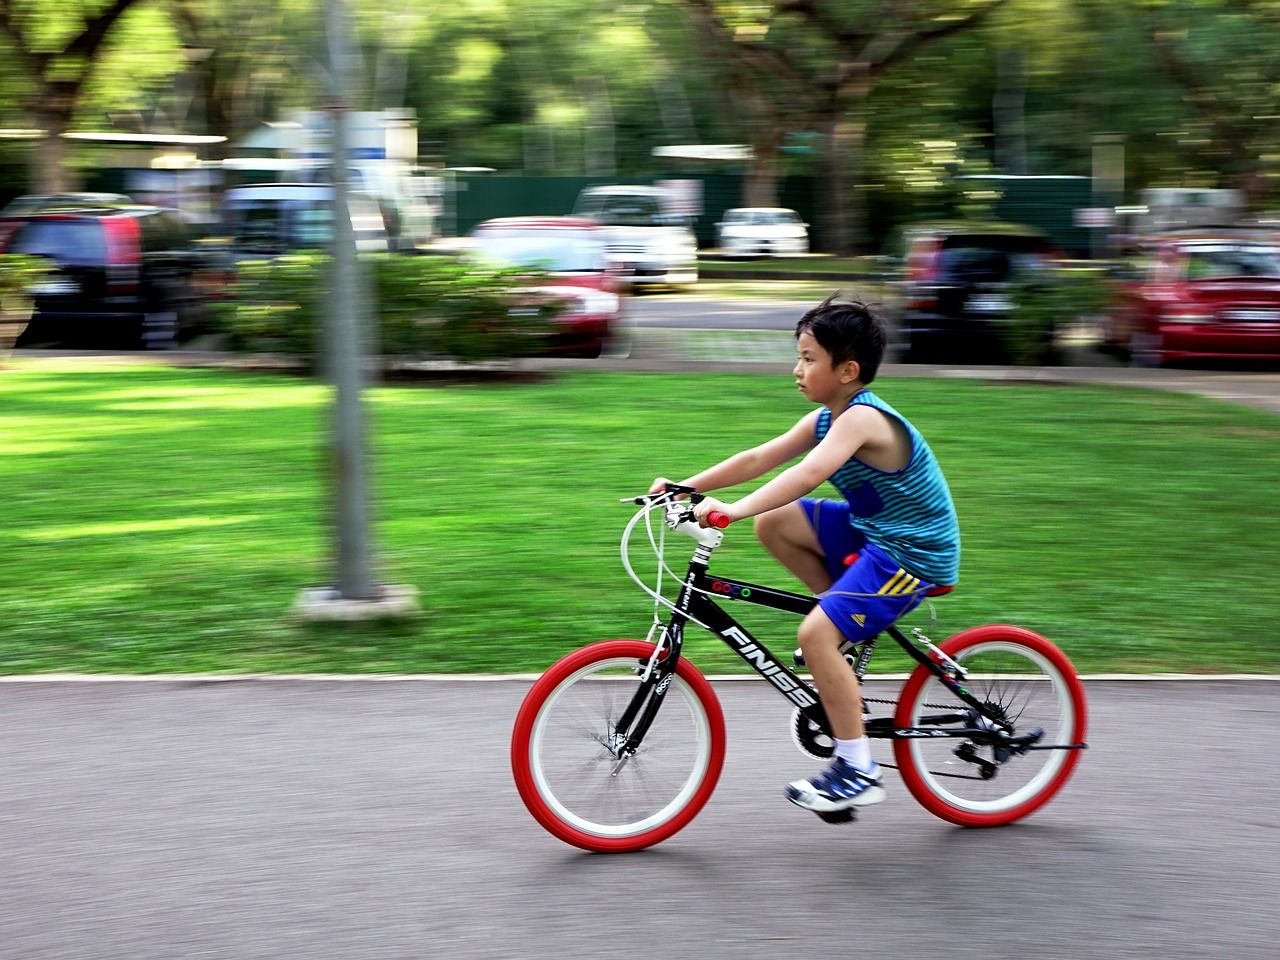 Jak ubrać się wycieczkę rowerową z dzieckiem?